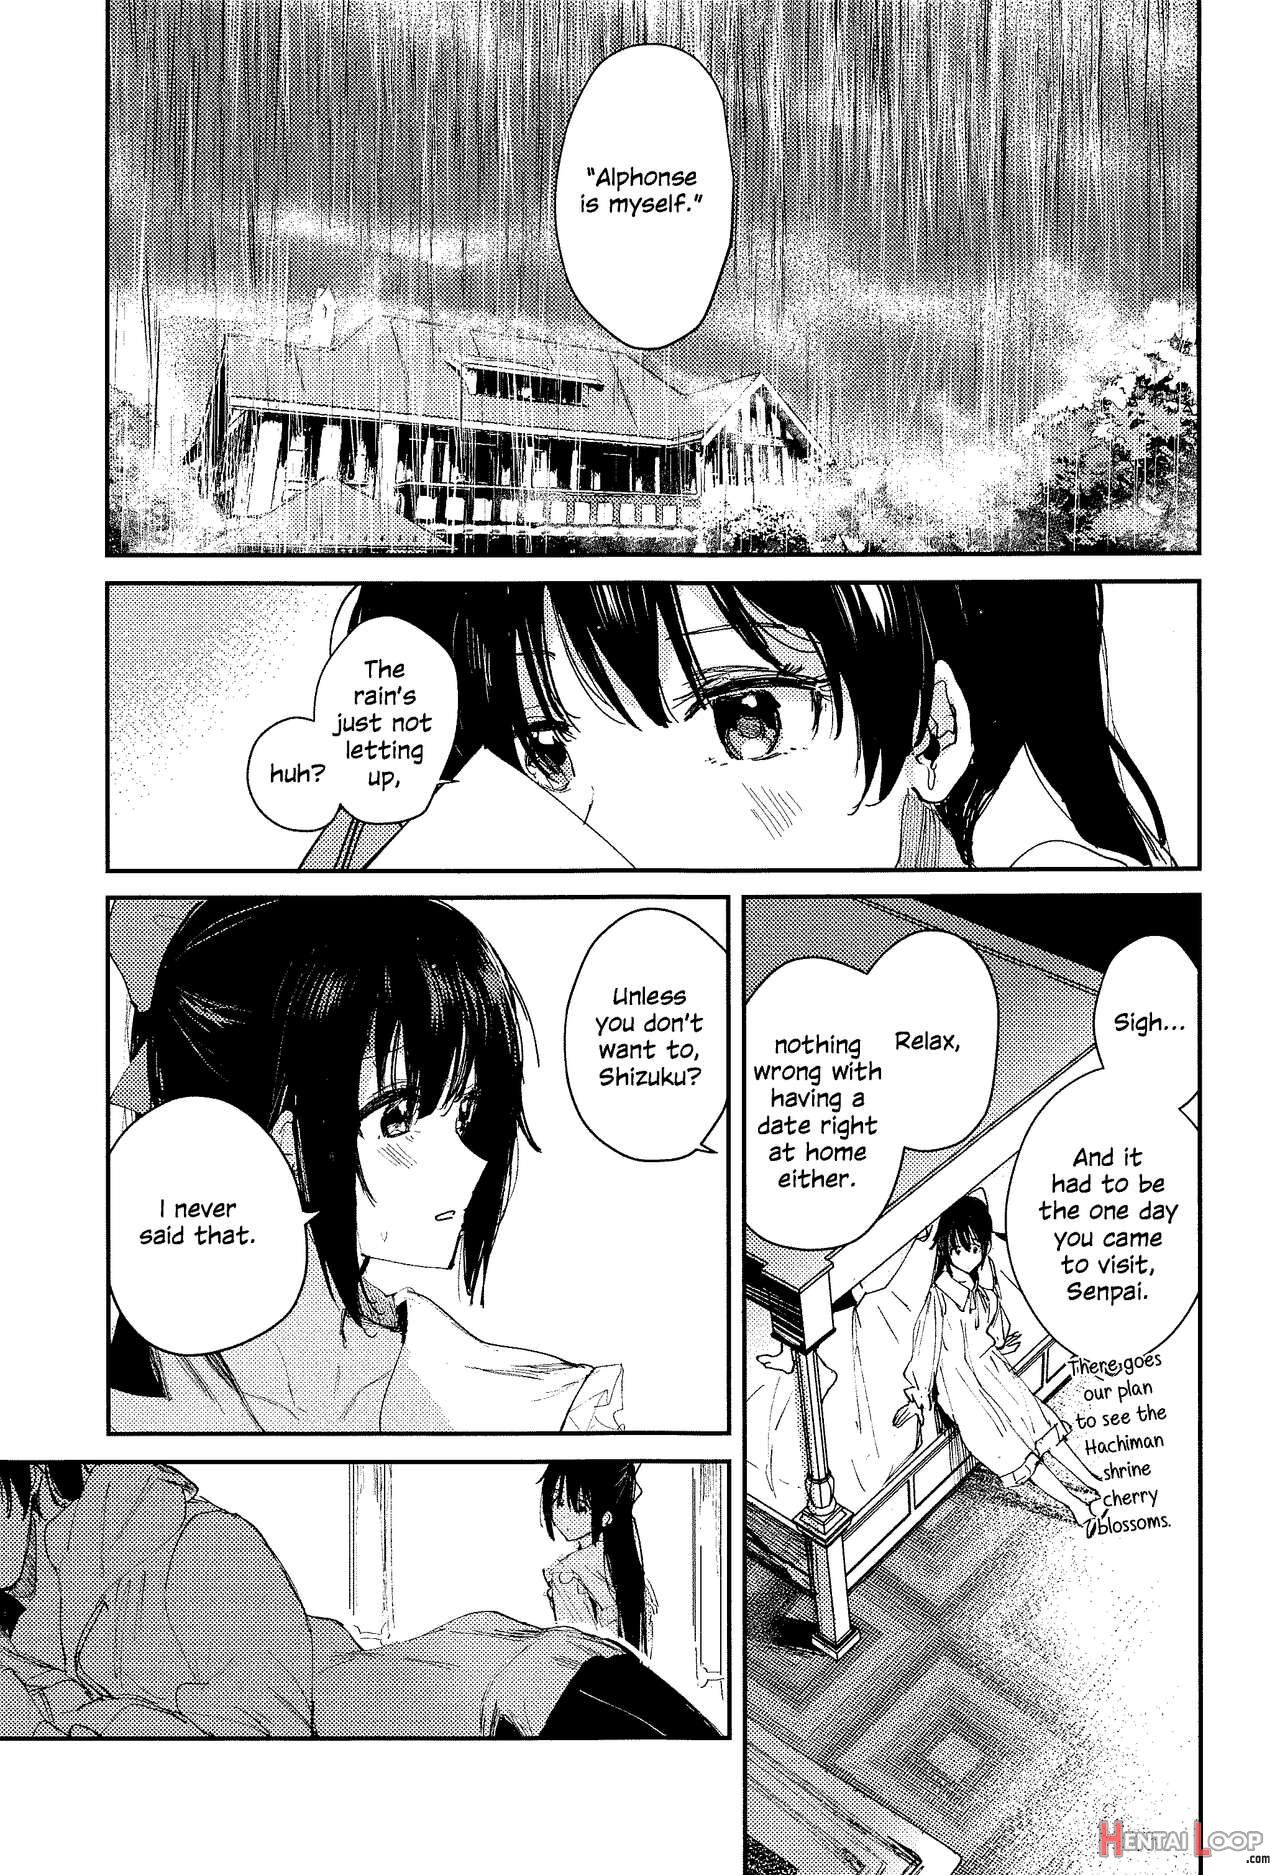 Haru Arashi page 2